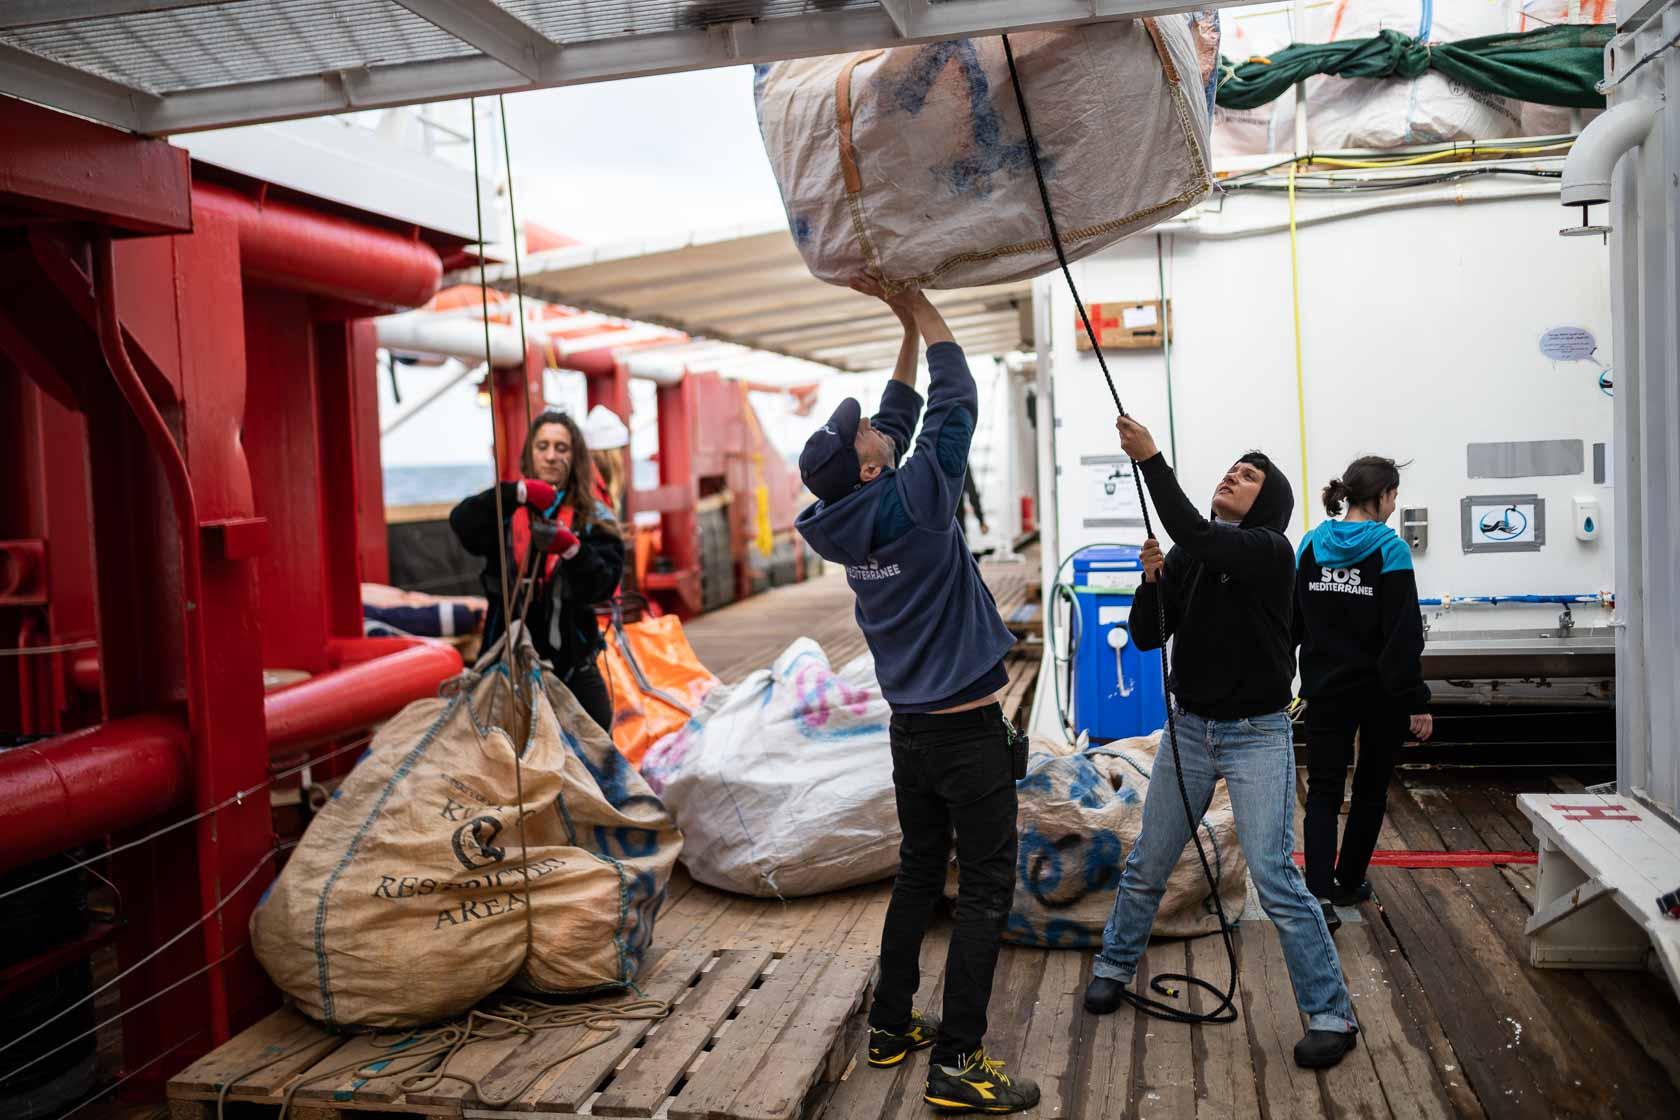 Des membres de l’équipe de recherche et de sauvetage préparent les gilets de sauvetage qui serviront durant les opérations de secours. Méditerranée Centrale. Mars 2021